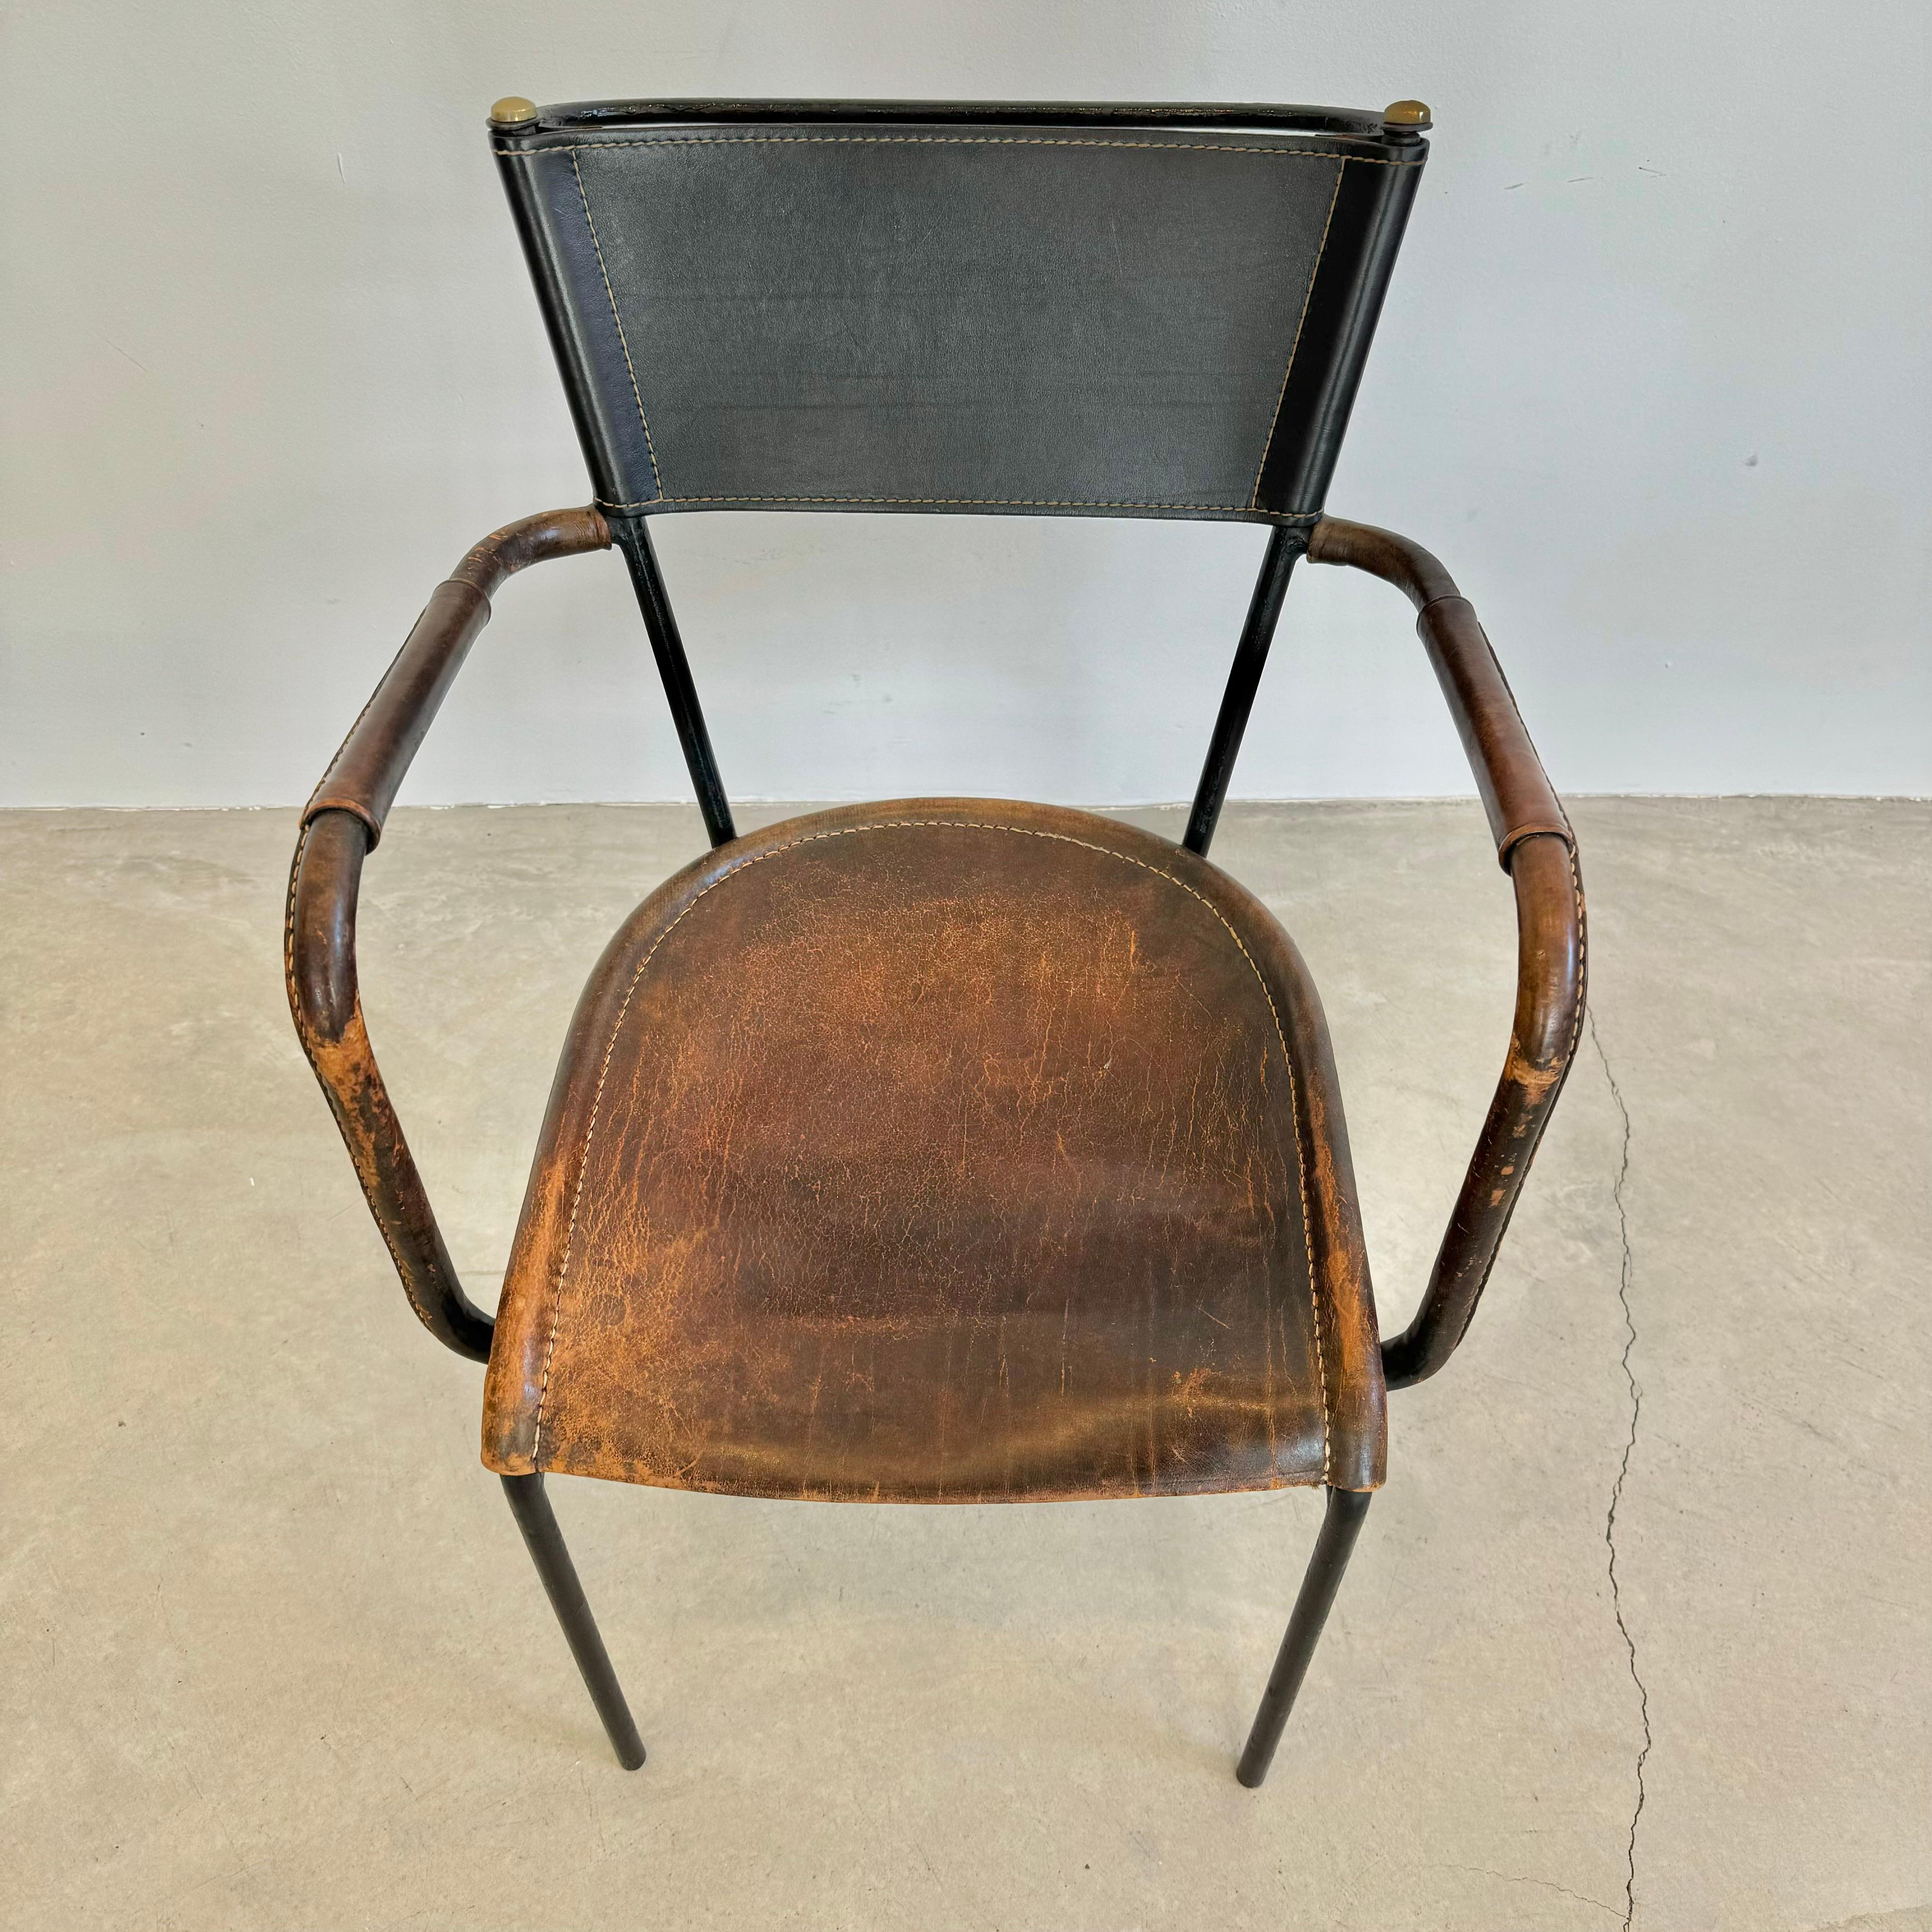 Superbe chaise du designer français Jacques Adnet. Structure tubulaire en métal noir avec assise et dossier en cuir et accoudoirs enveloppés de cuir. La chaise est dotée d'un magnifique accoudoir en forme de boucle d'aile et d'une poignée en fer